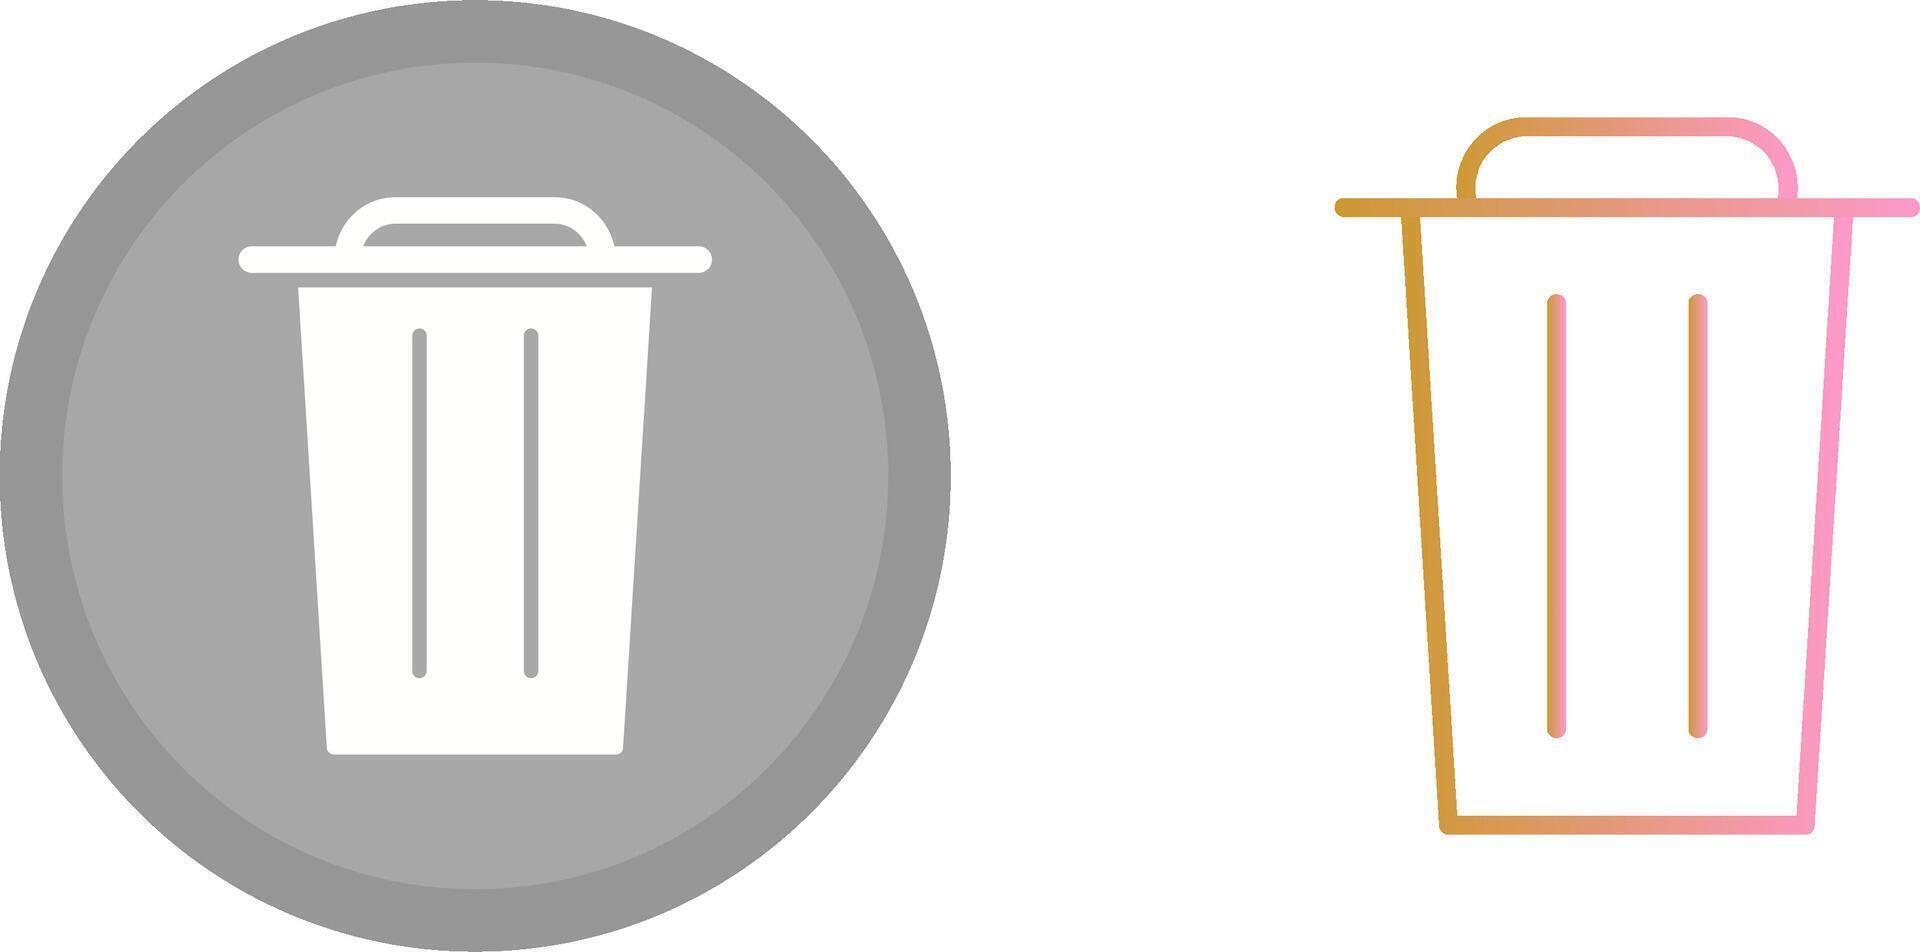 Garbage Icon Design vector